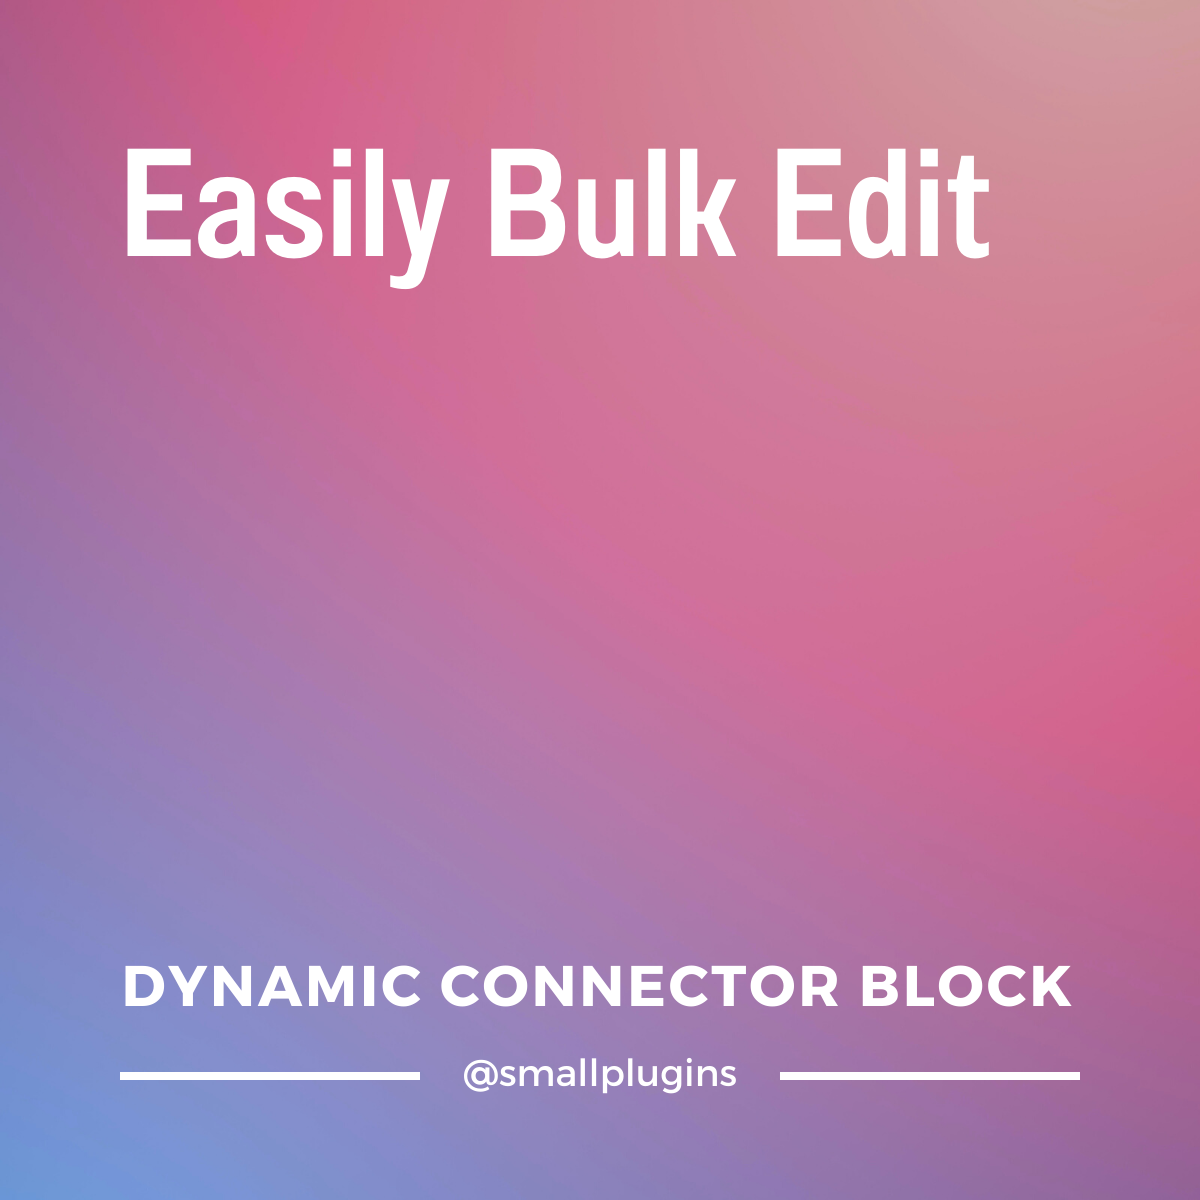 Dynamic Connector Block: easily bulk edit